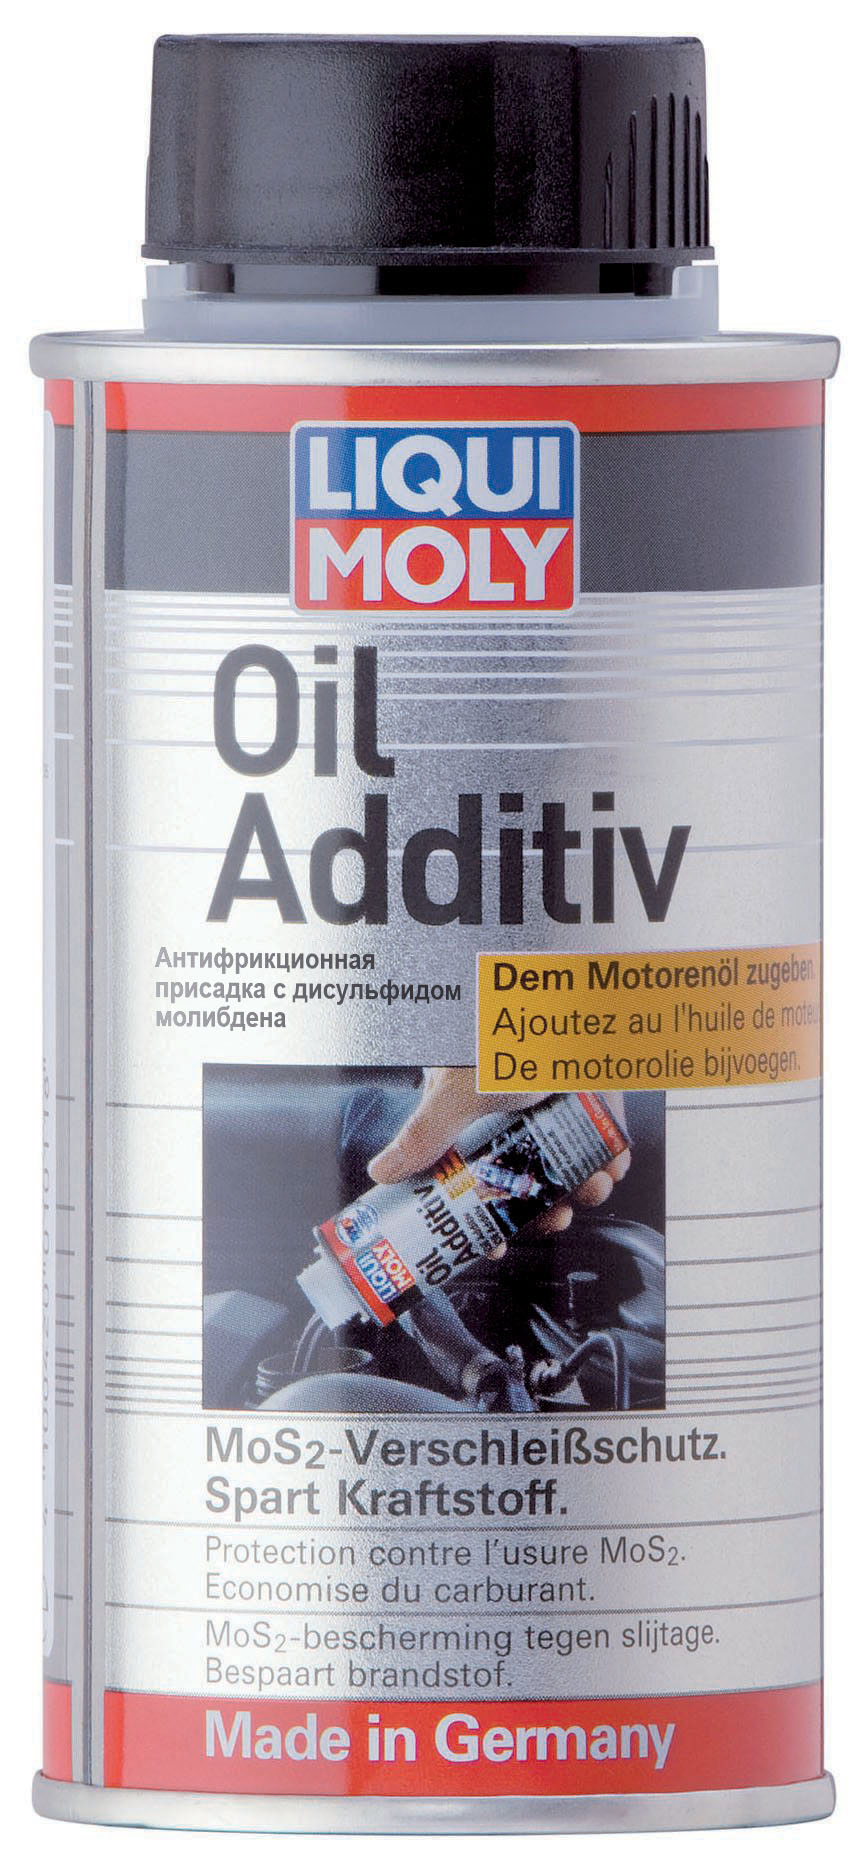 Купить запчасть LIQUI MOLY - 3901 Антифрикционная присадка с дисульфидом молибдена в моторное масло